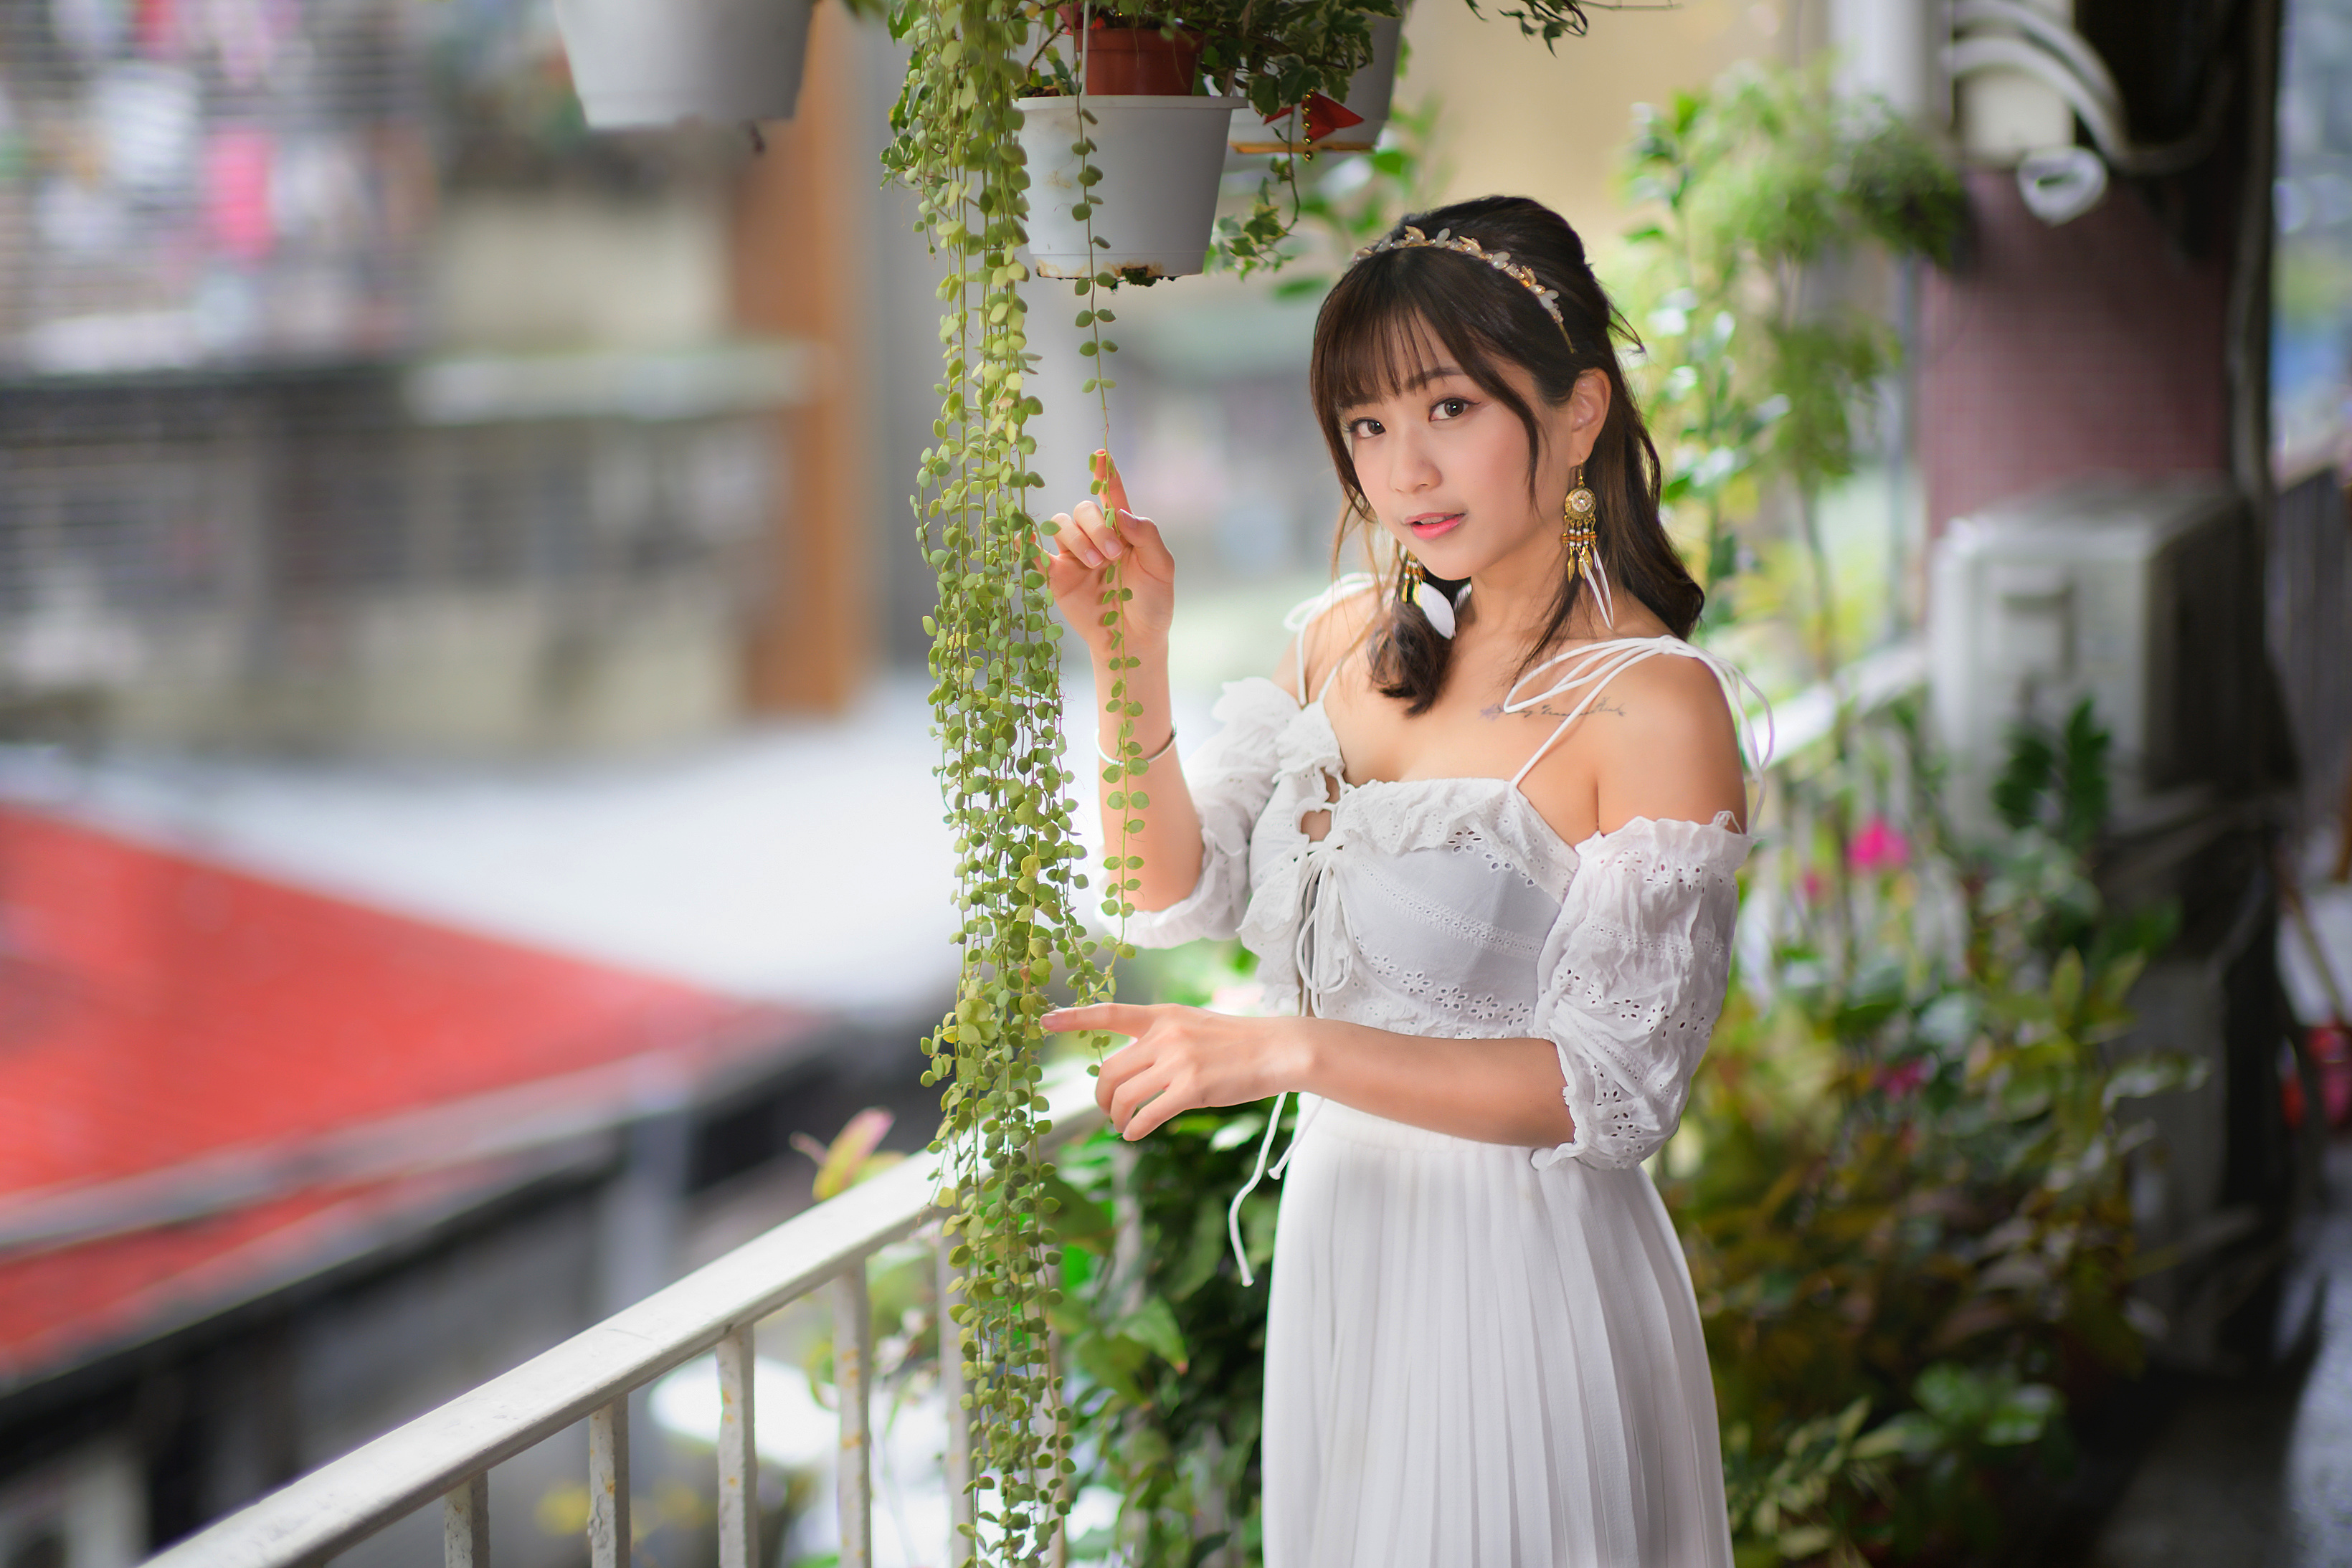 Asian Model Women Long Hair Dark Hair White Dress Hair Band Earrings Ponytail Plants Flowerpot Raili 3280x2187